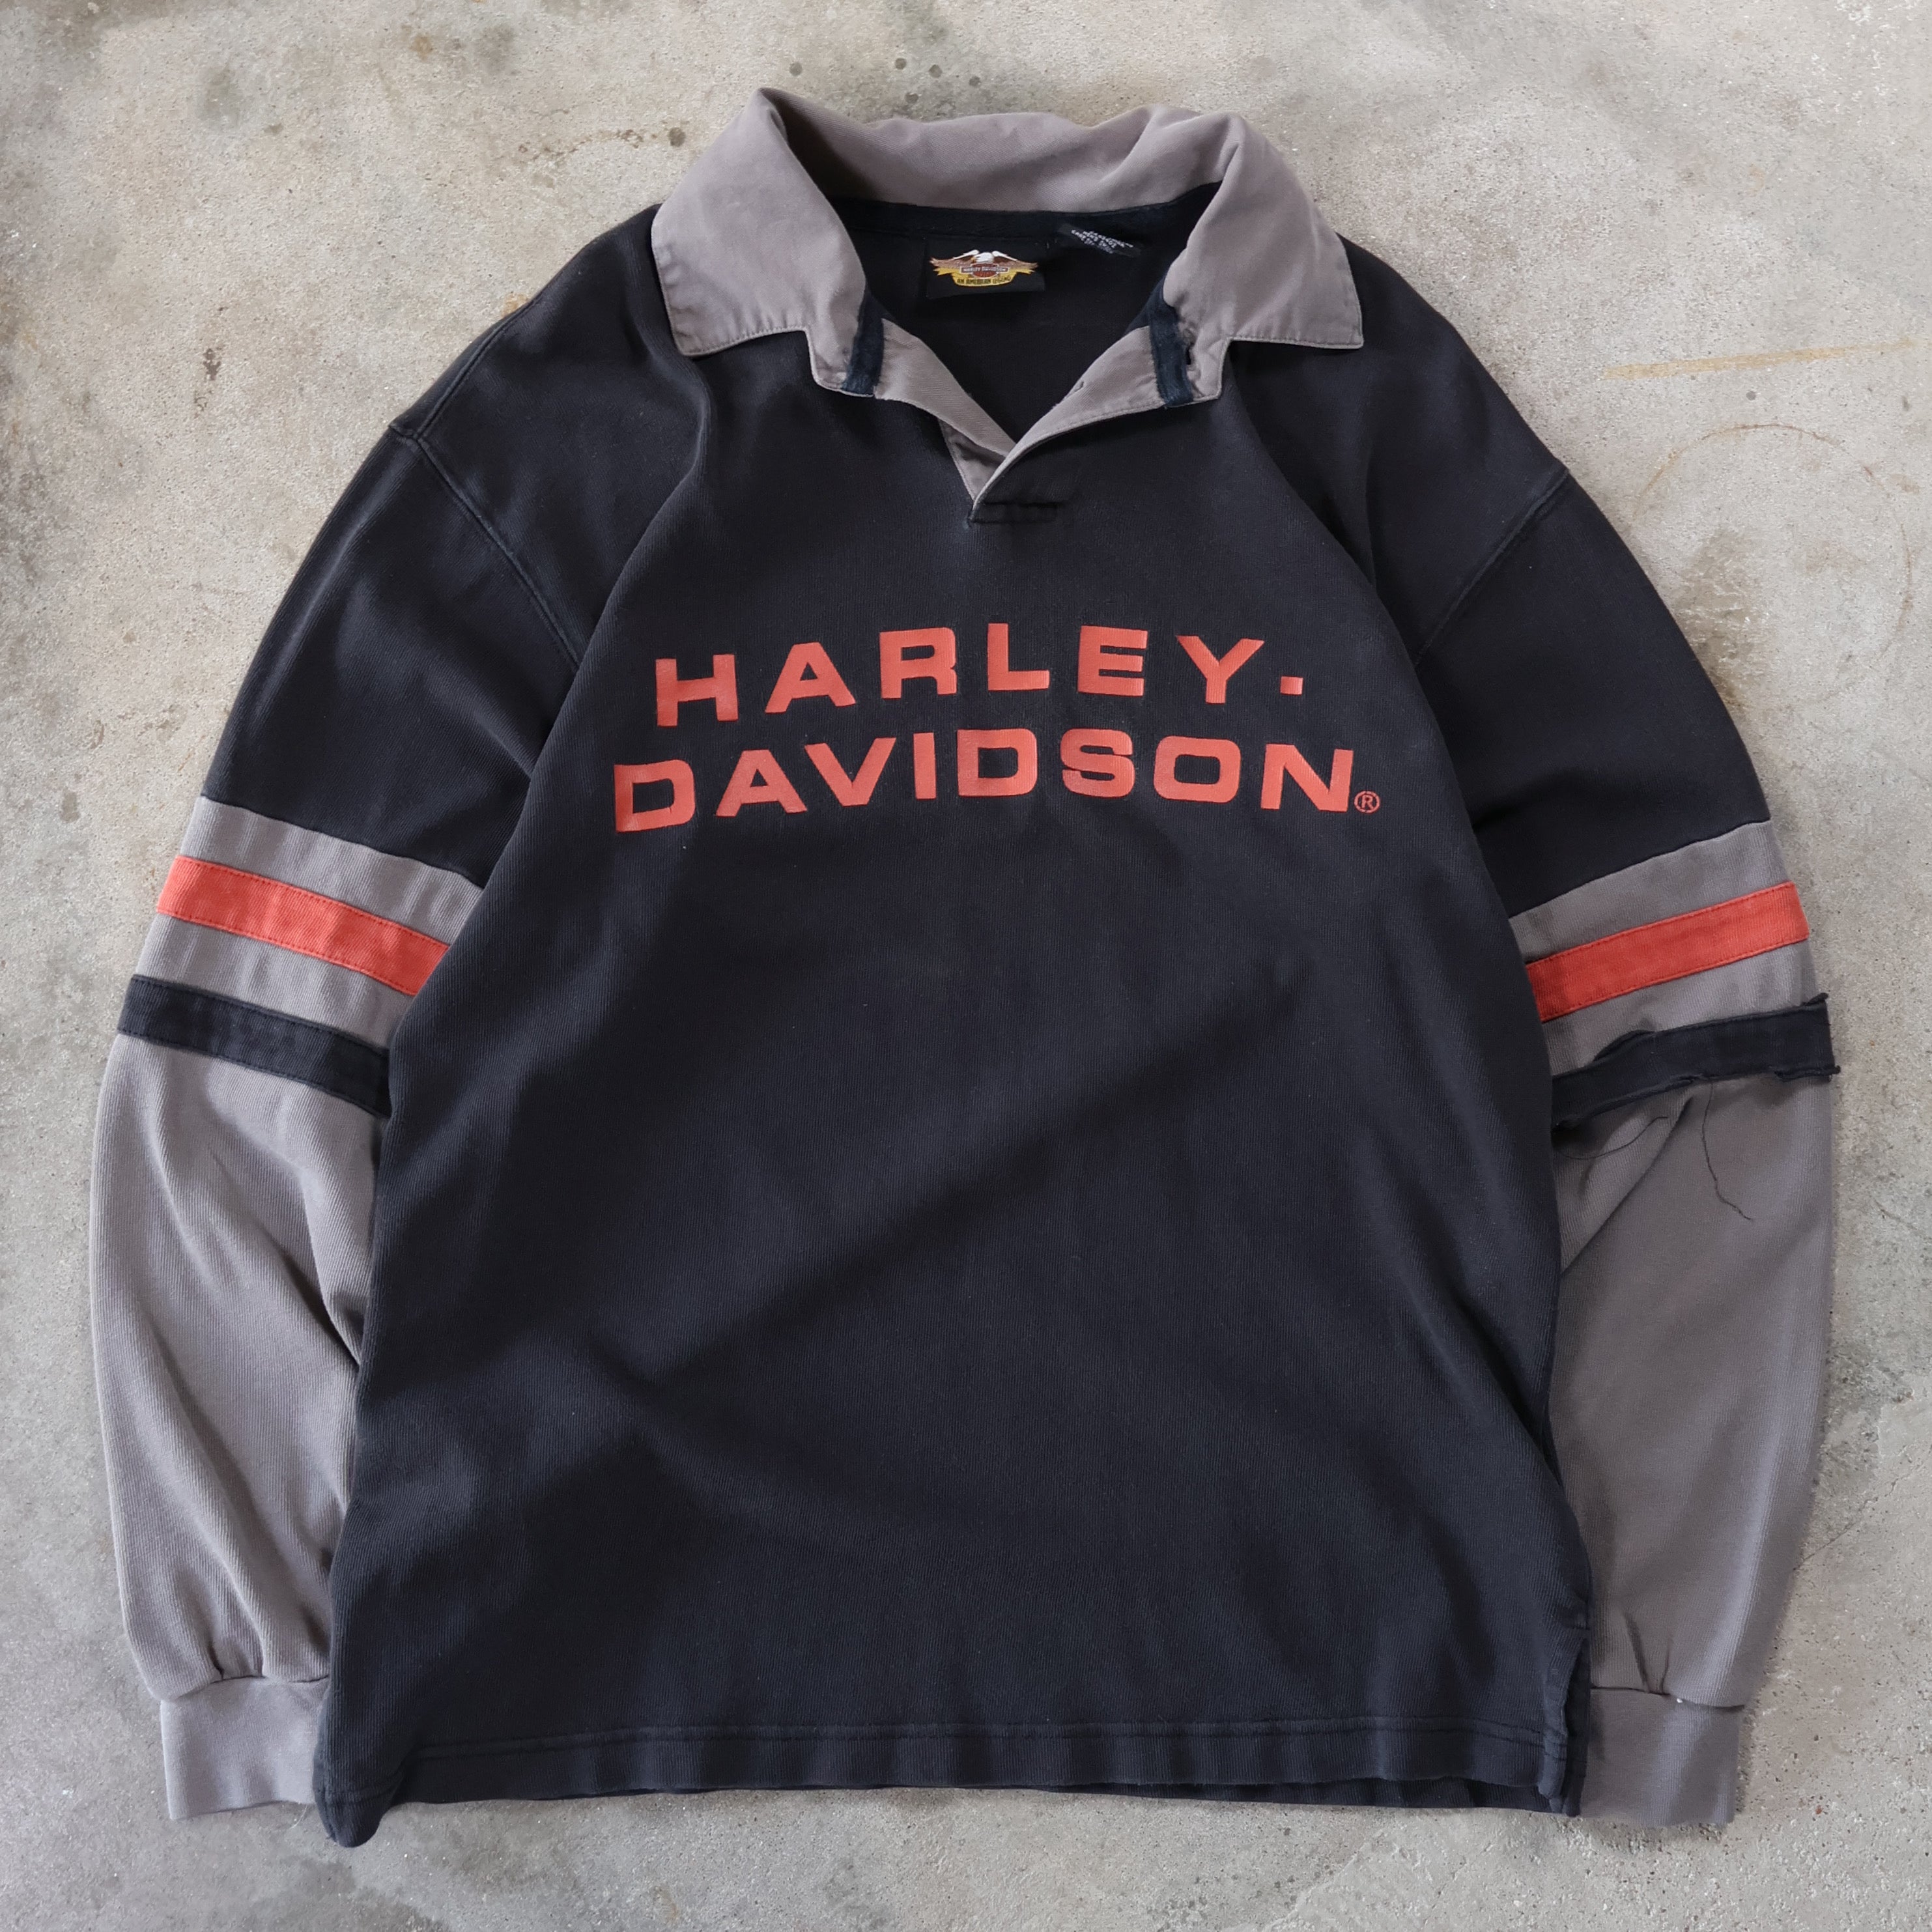 Harley Davidson Longsleeve Polo T-Shirt 90s (Medium)